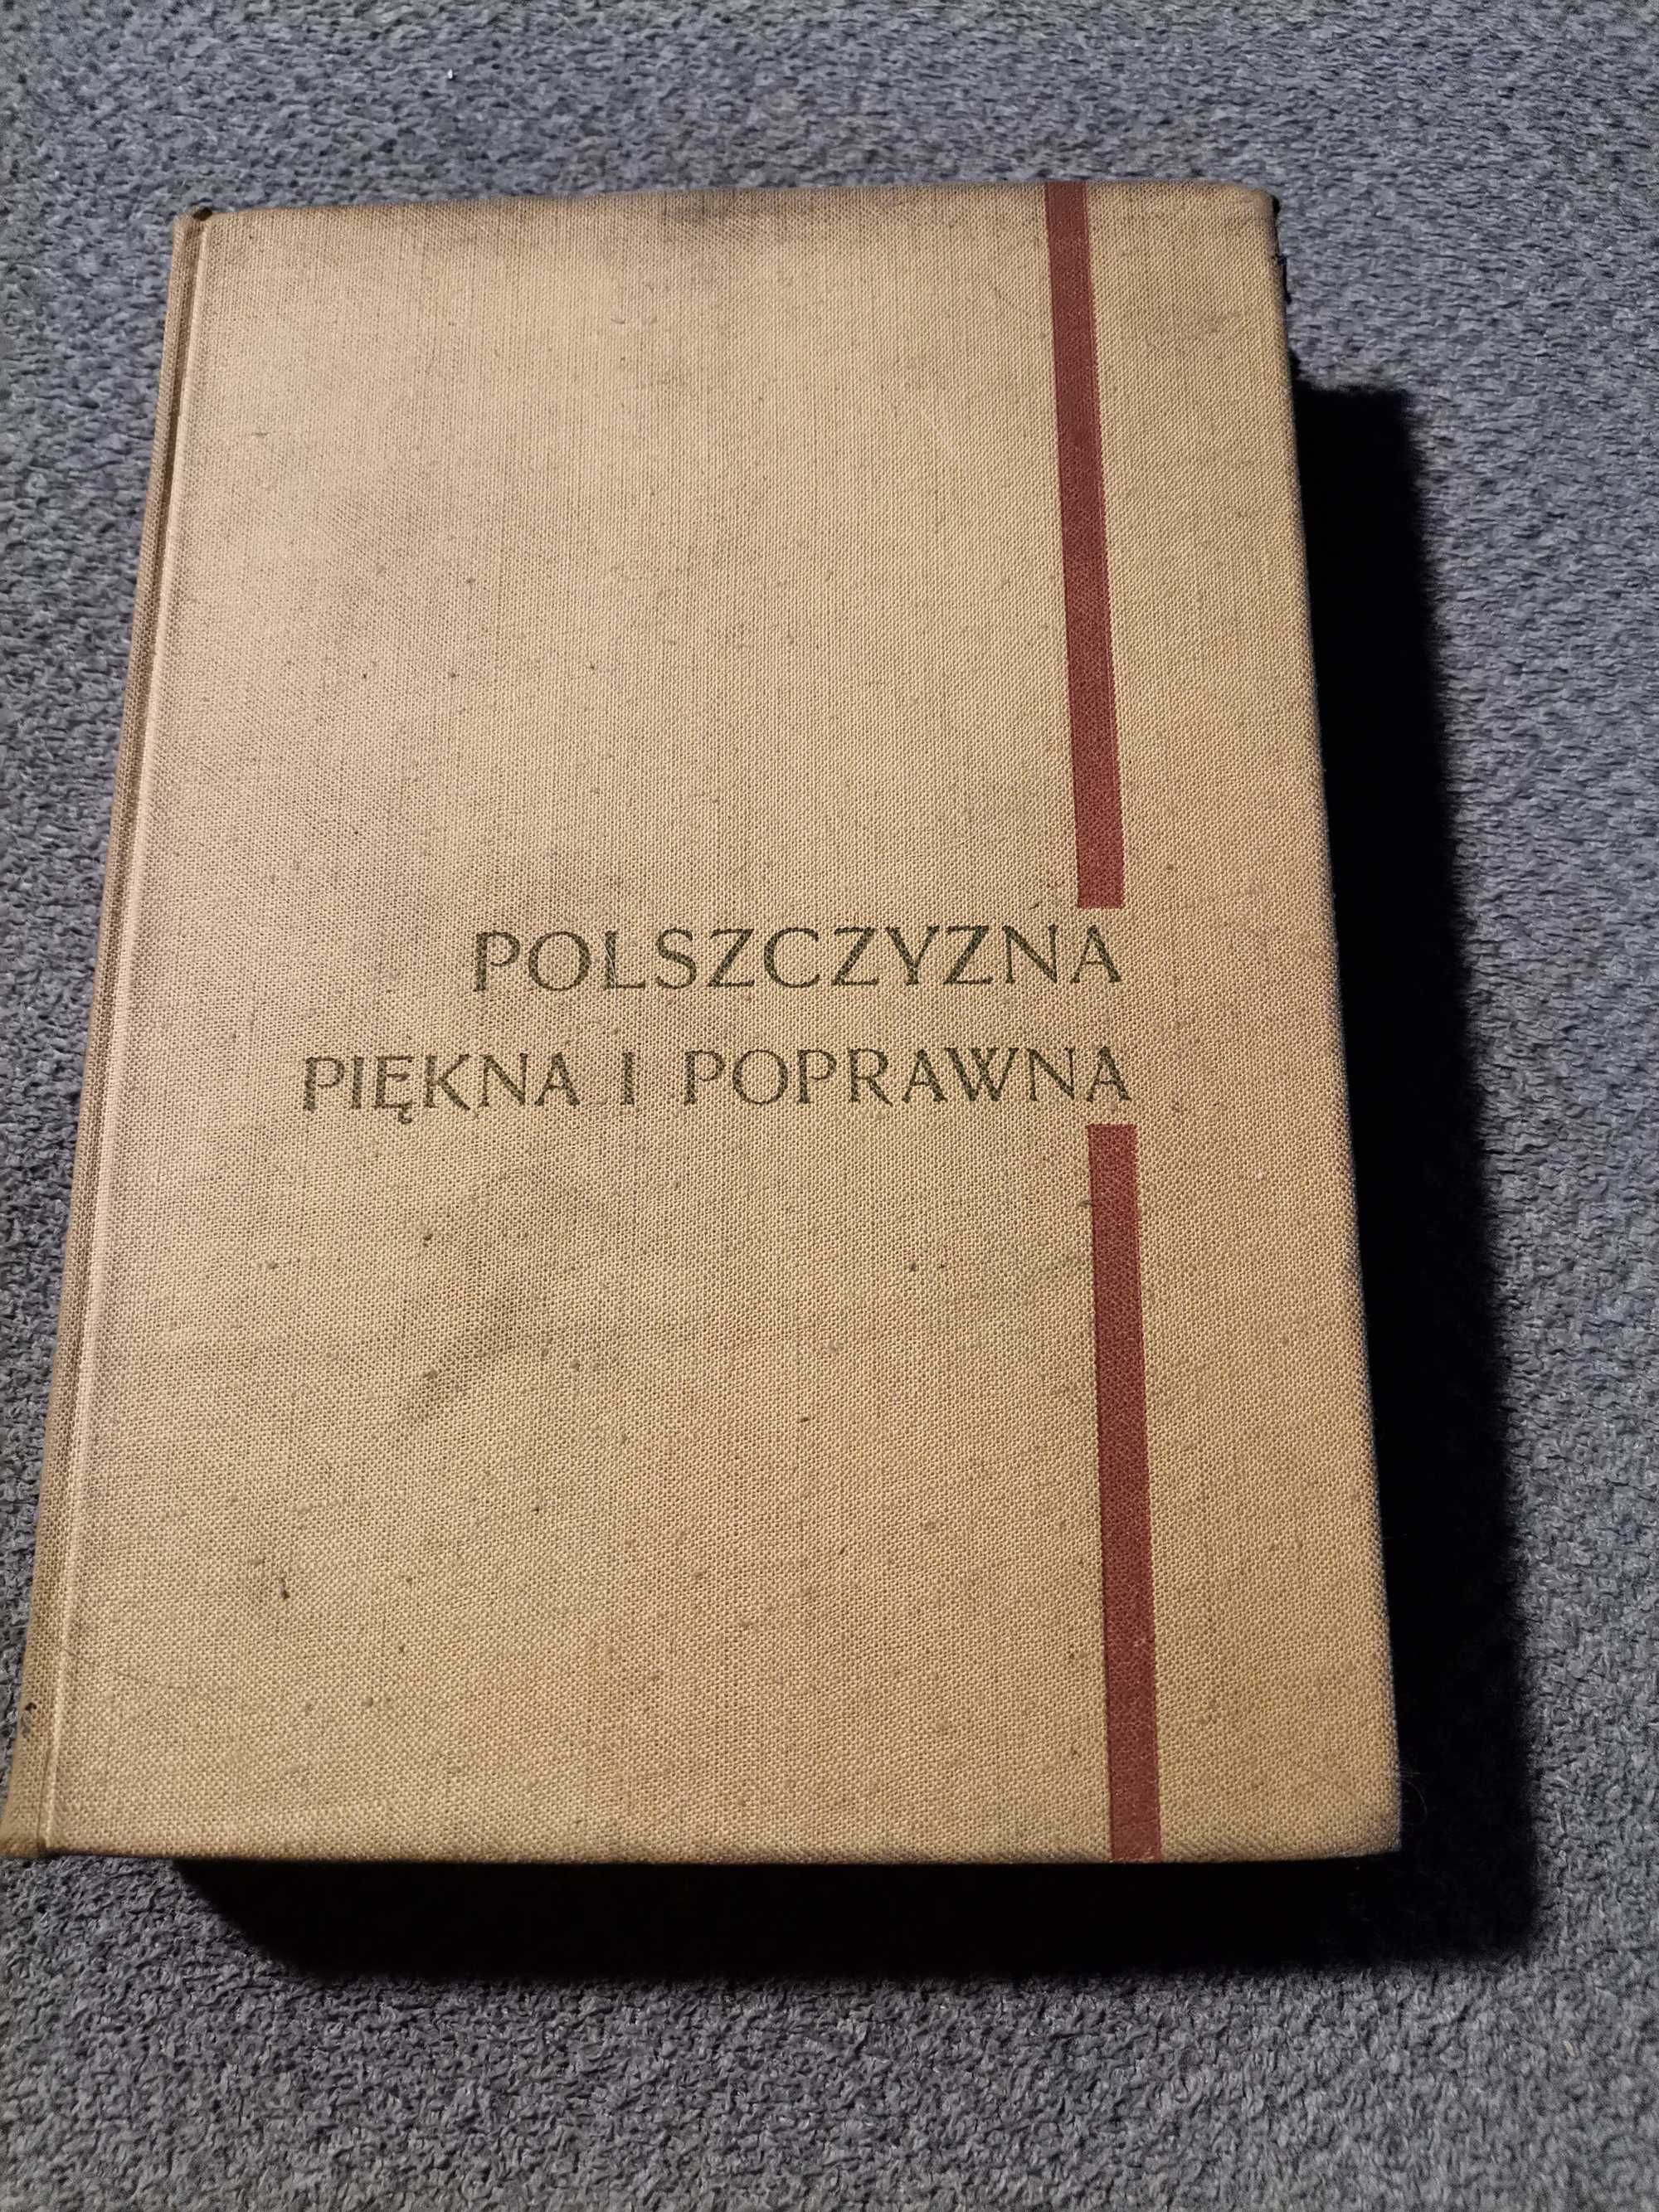 Polszczyzna Piękna i Poprawna. Stanisław Urbańczuk